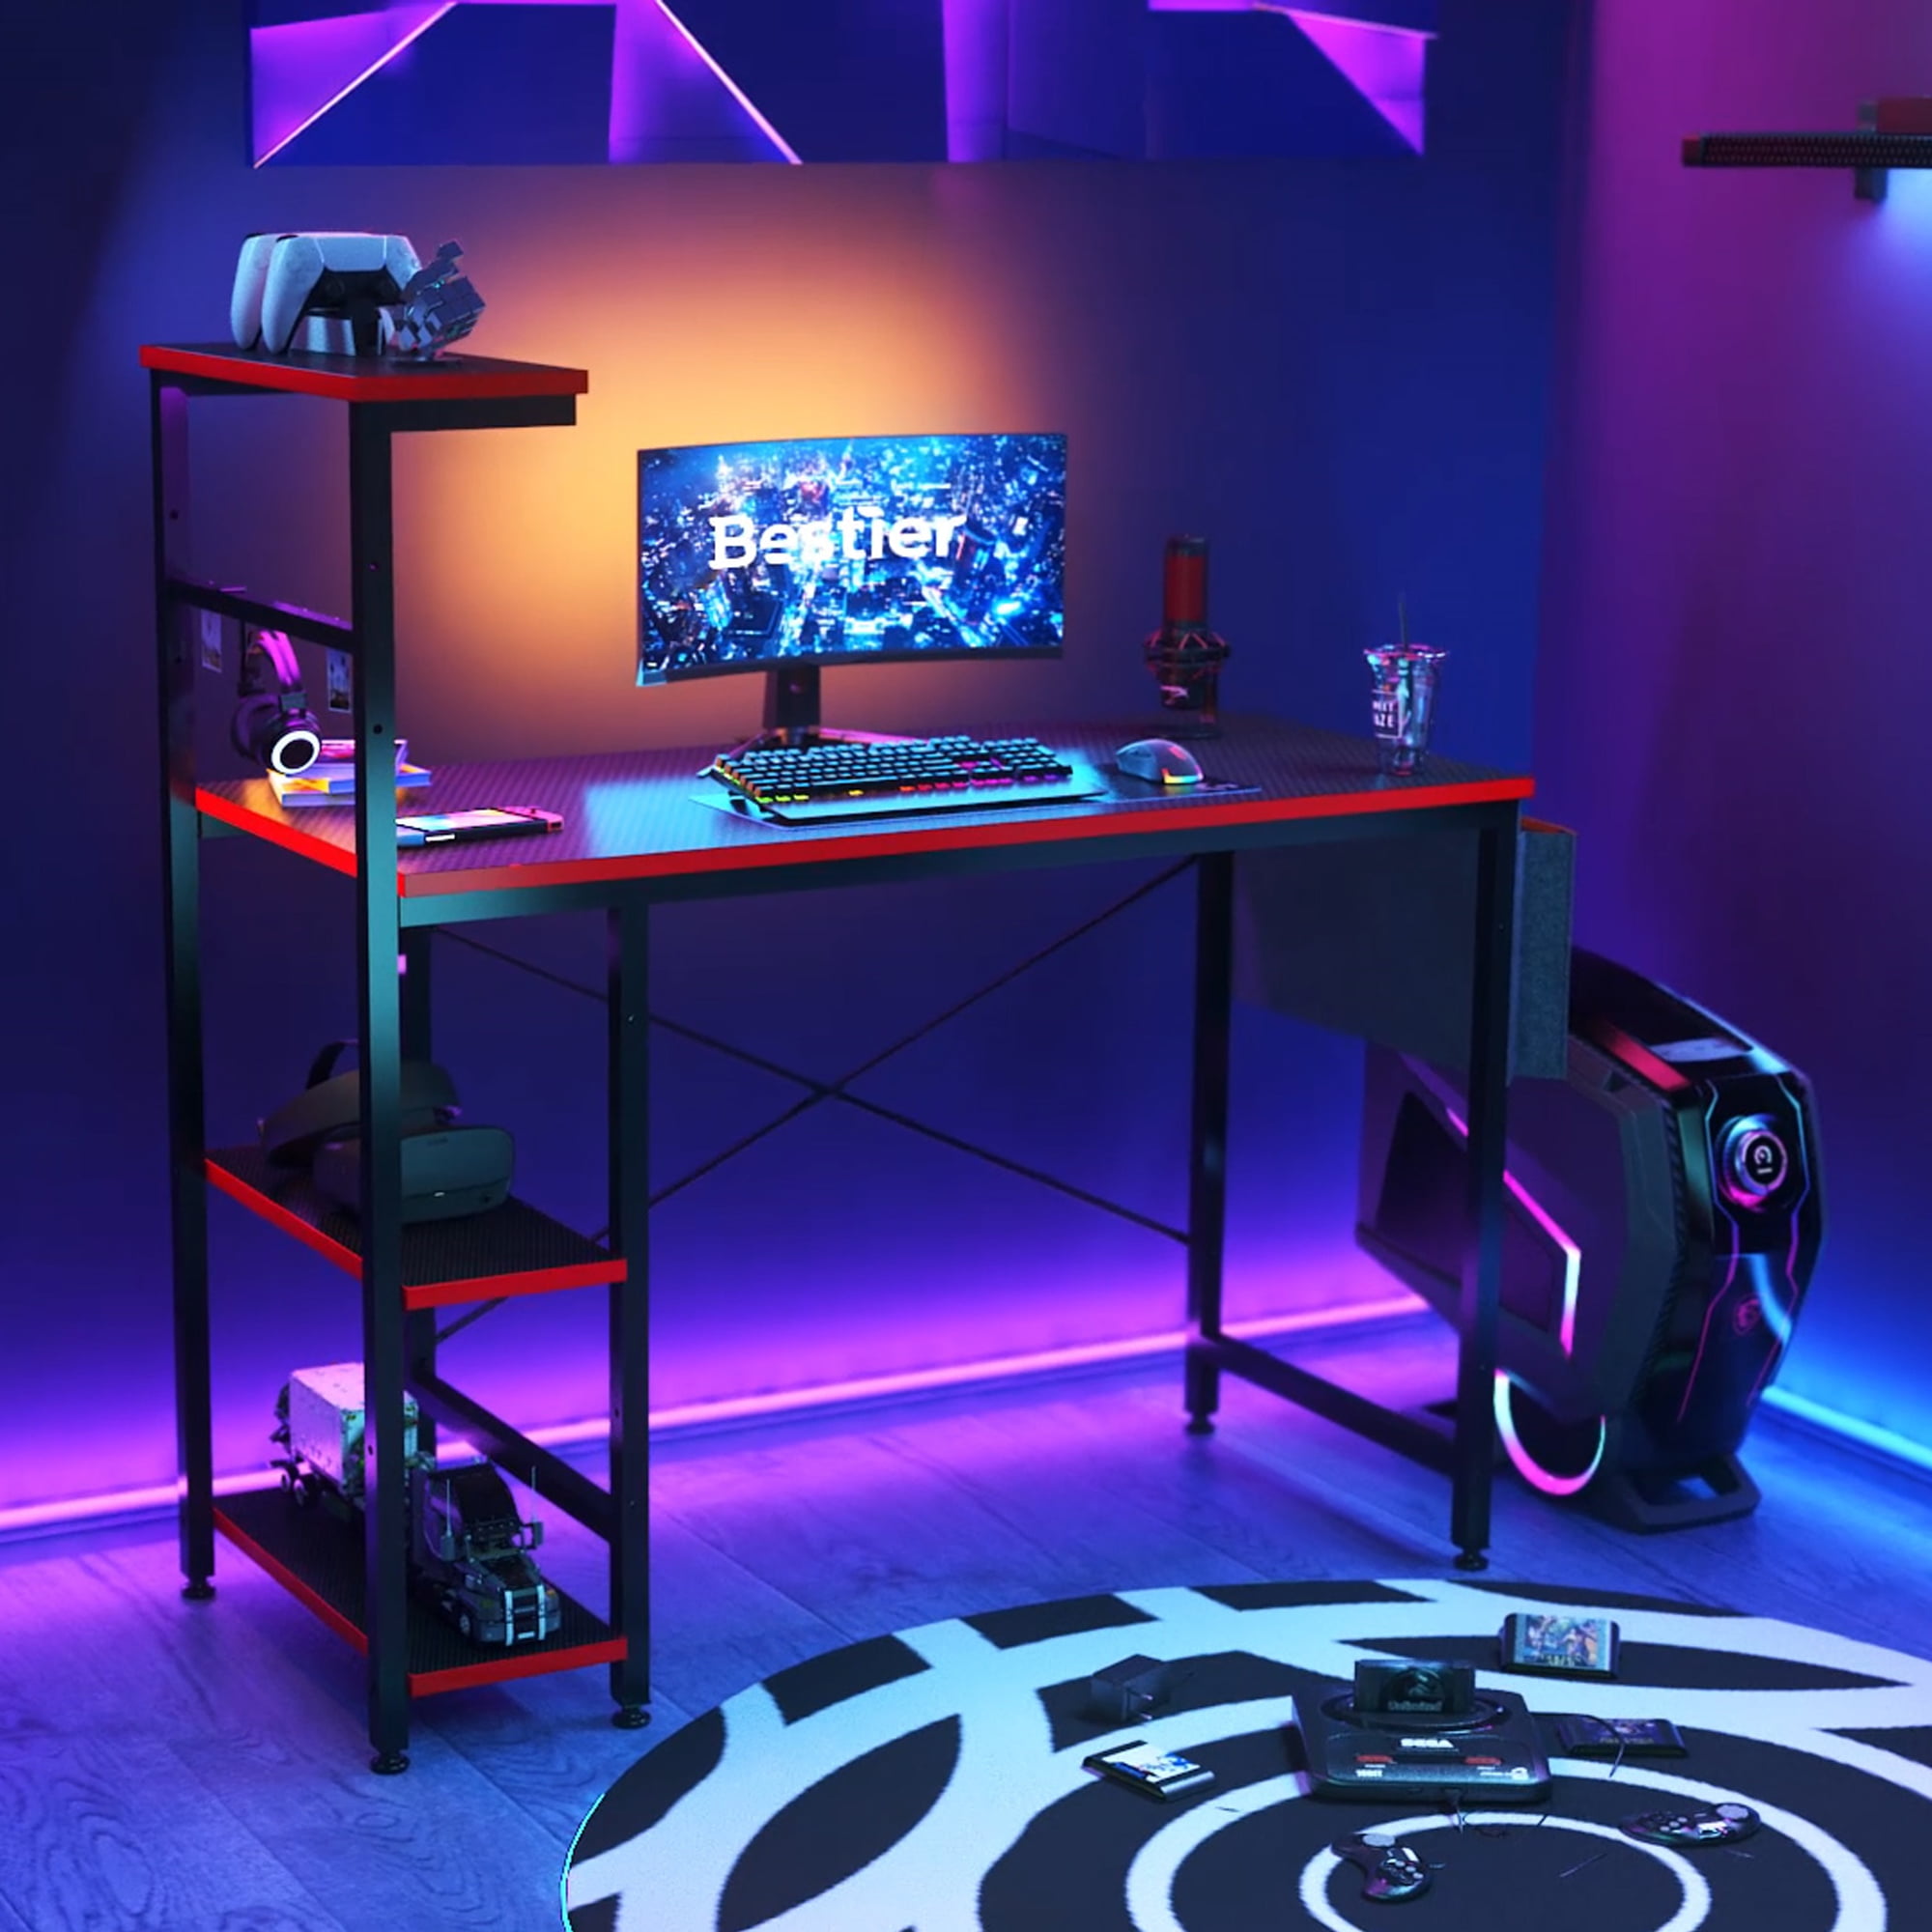 Bestier Reversible 44 inch Computer Desk with LED Lights Gaming Desk , 4 Tier Shelves Carbon Fiber - image 1 of 10